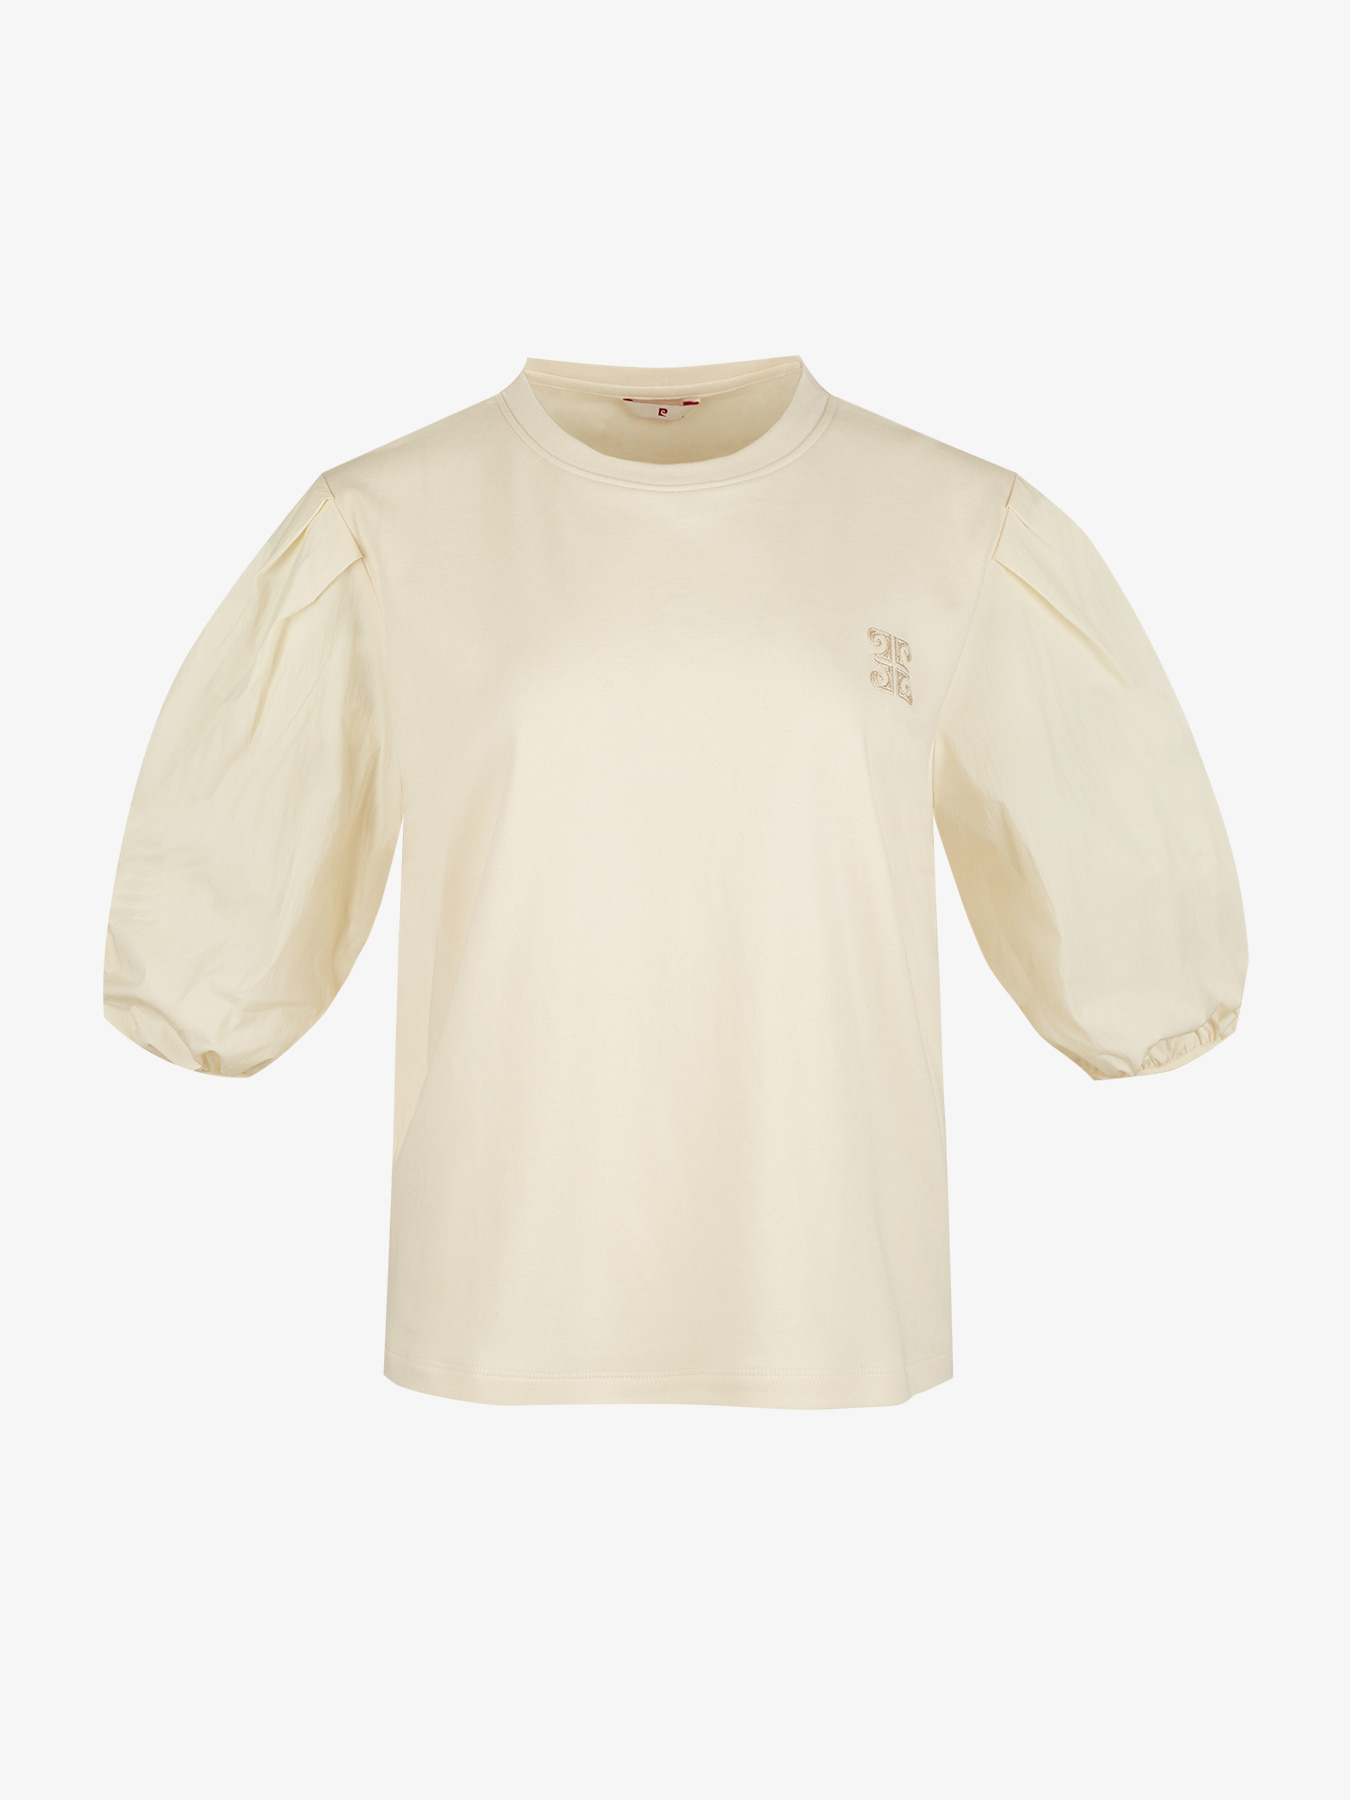 [피에르가르뎅] 우븐배색 체인자수 티셔츠 LOTS1402